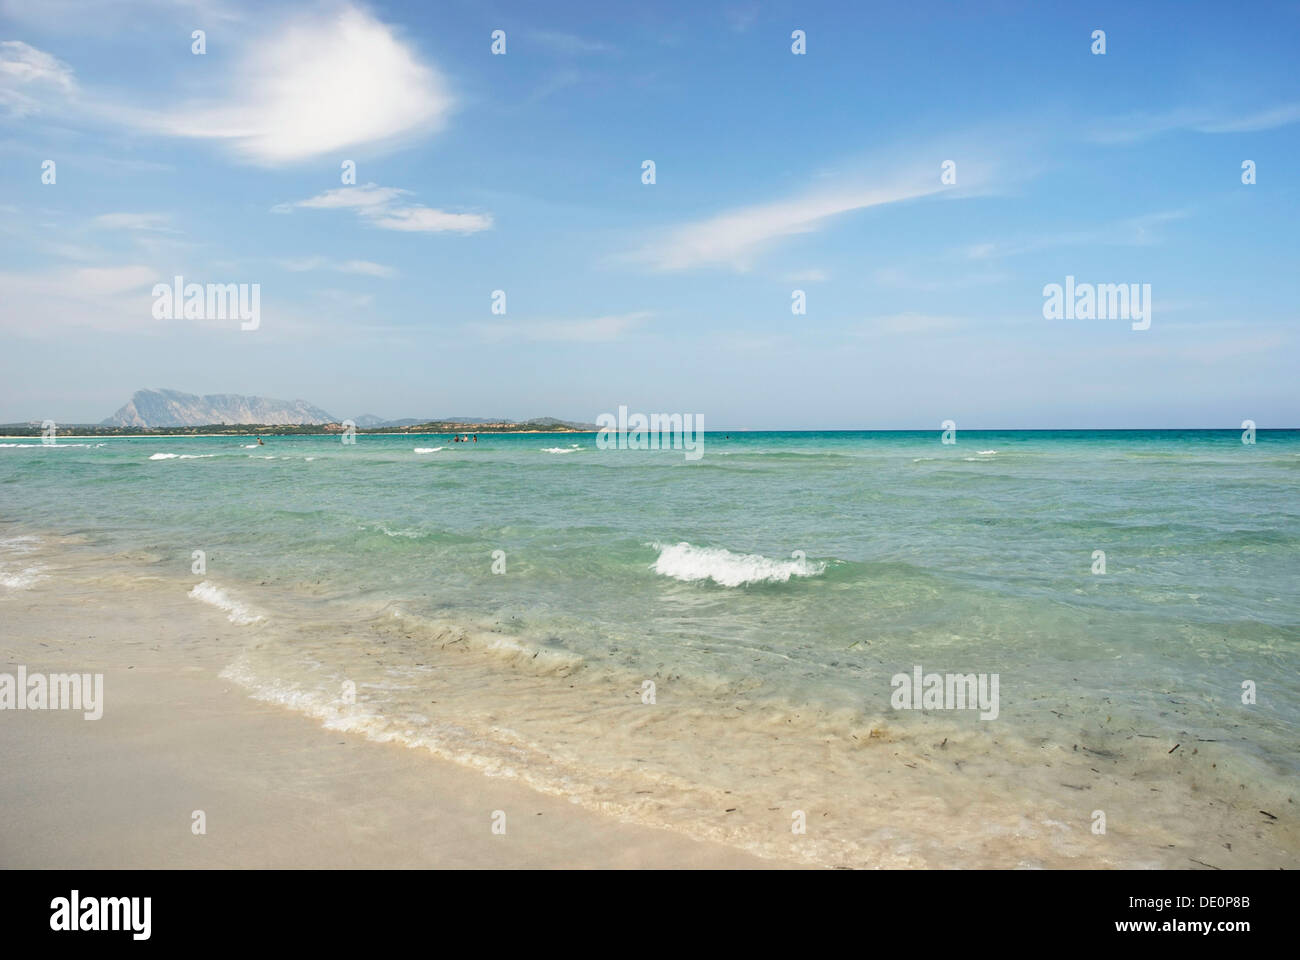 Plage de sable avec de l'eau vert-turquoise, La Cinta, Sardaigne, Italie, Europe Banque D'Images